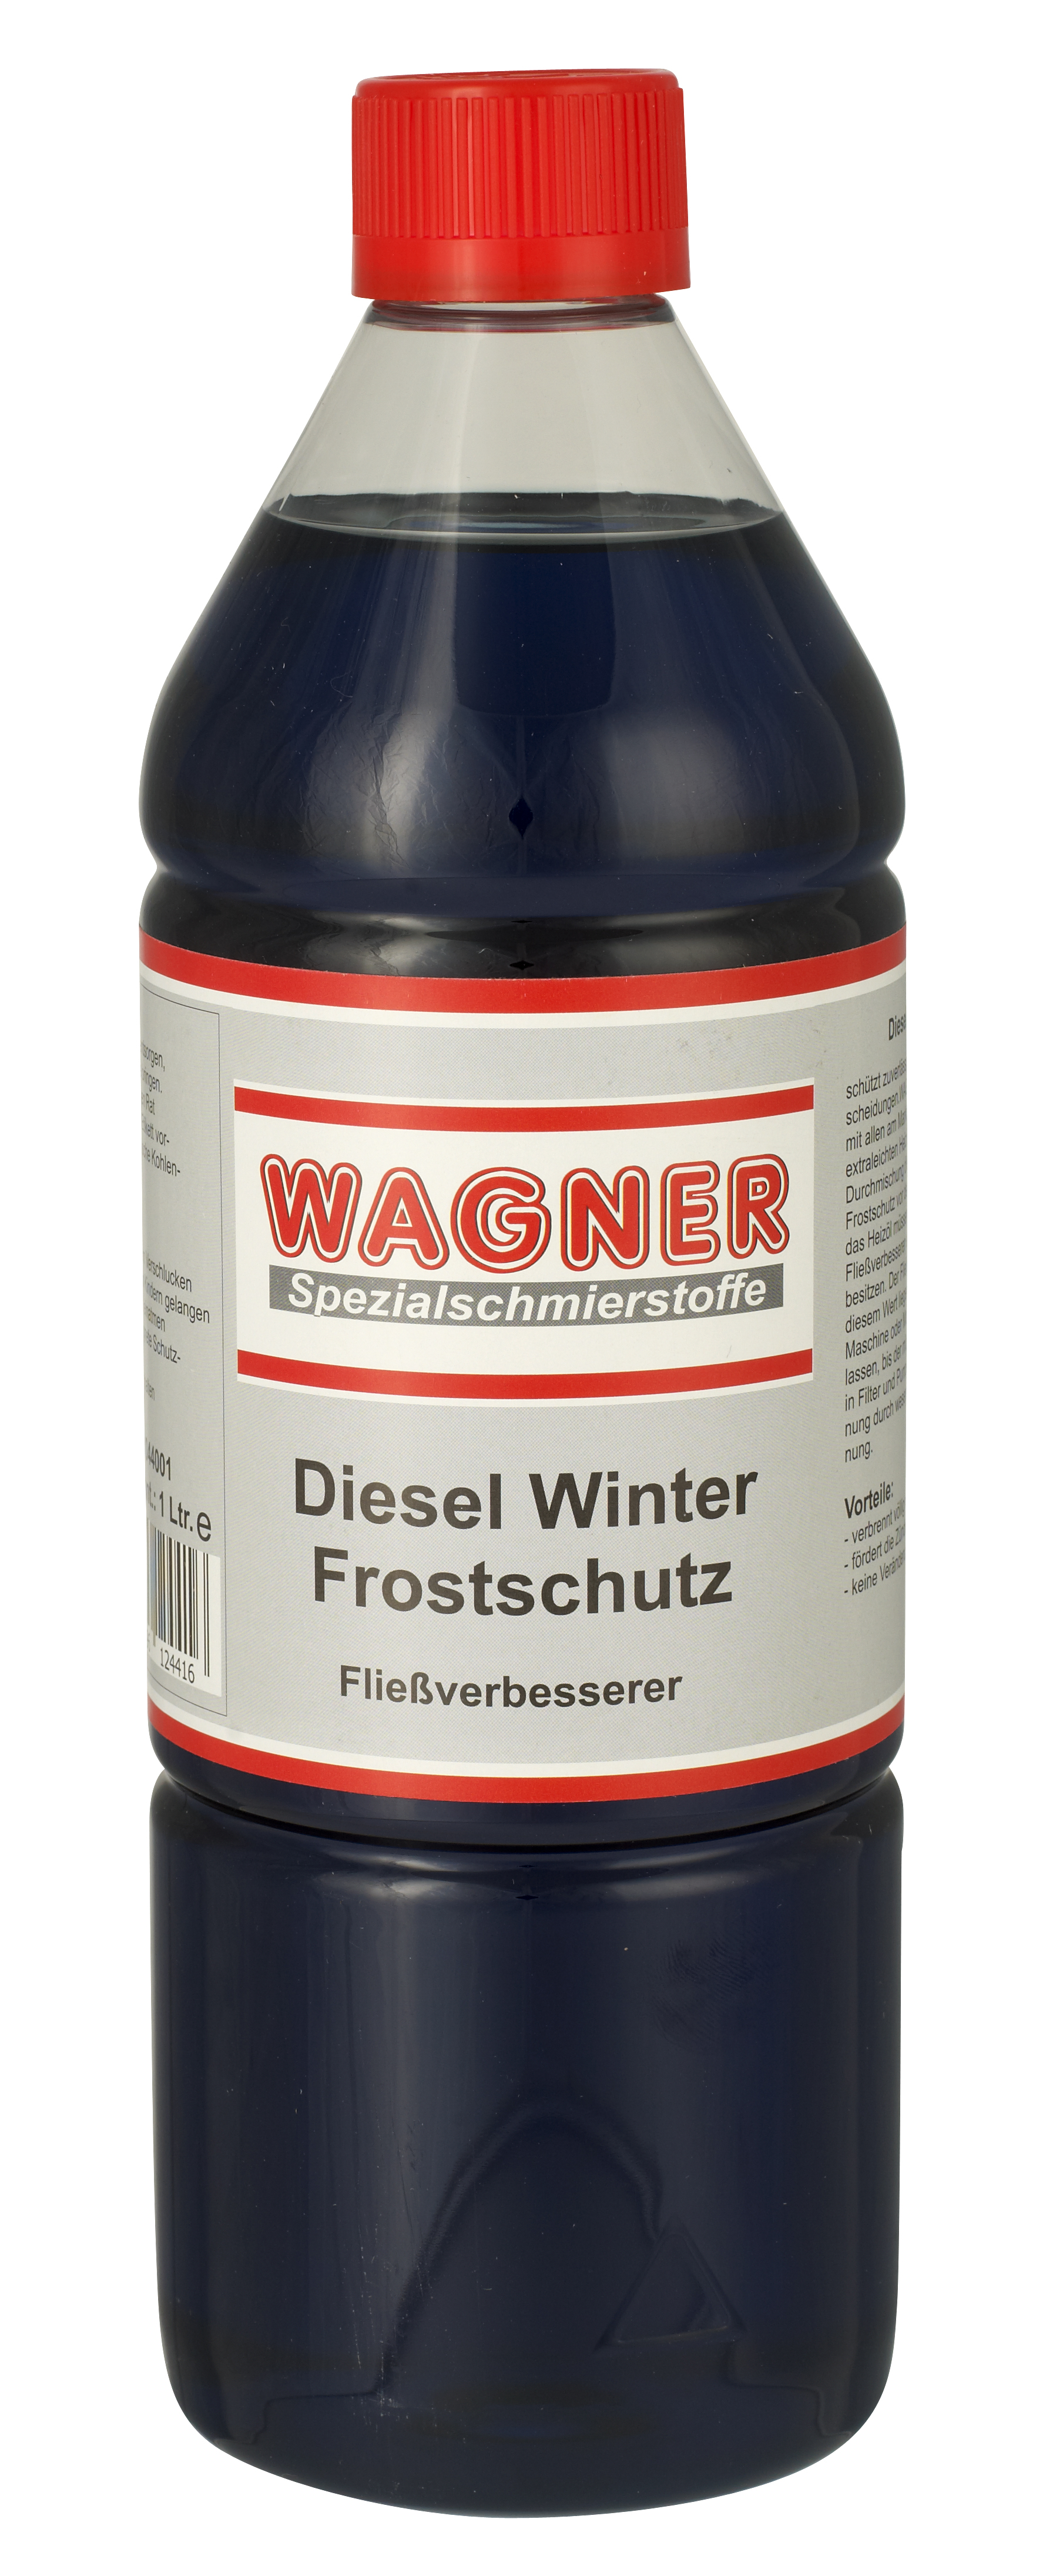 WAGNER - Diesel Winter Frostschutz